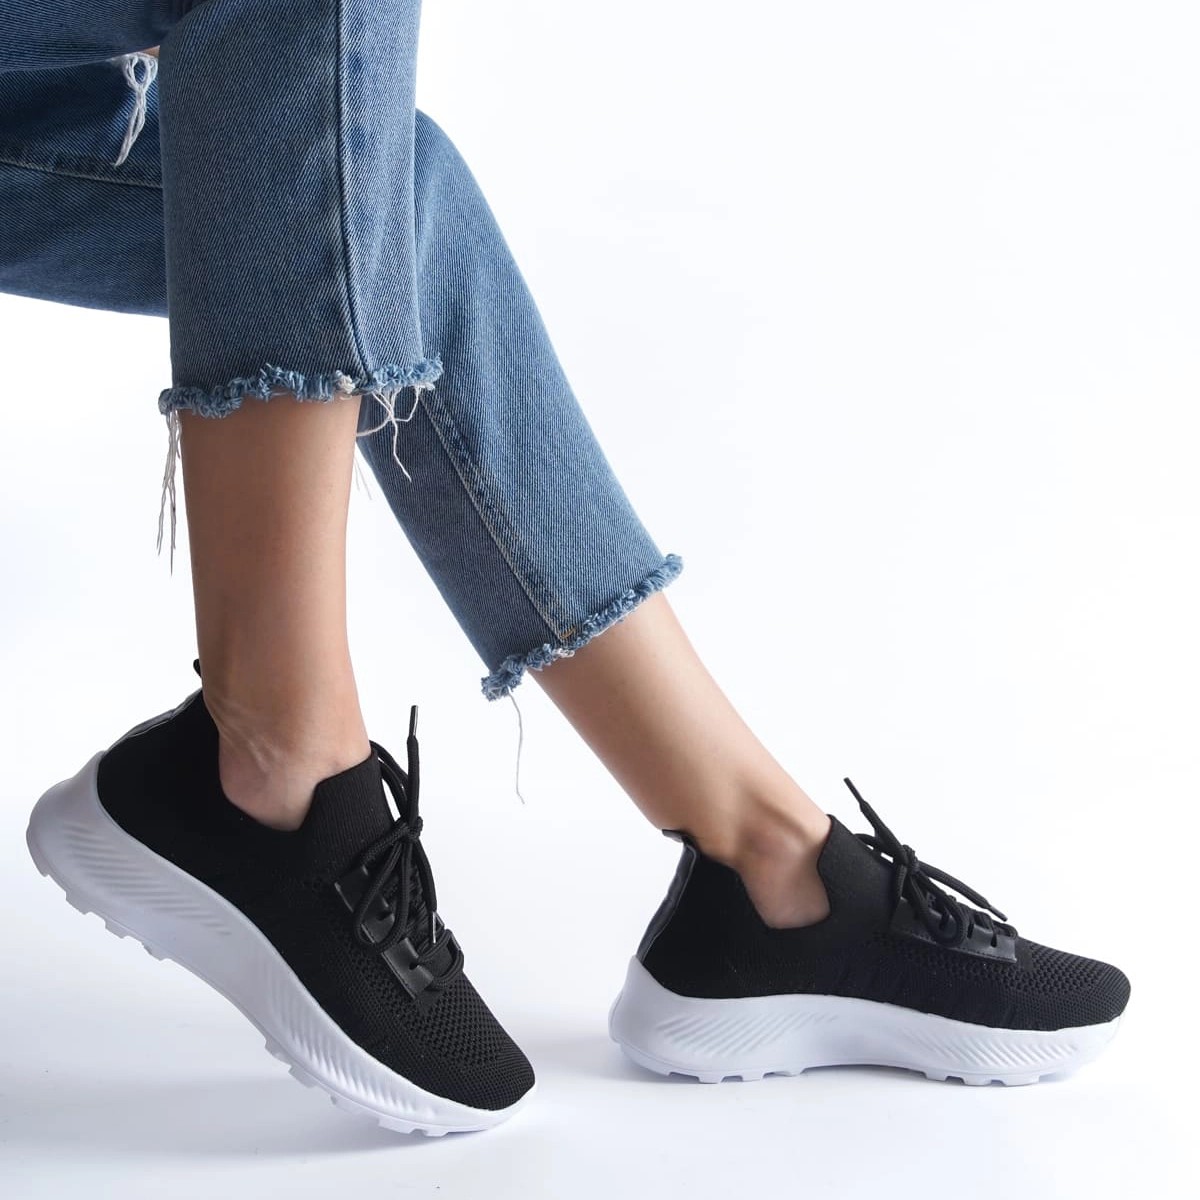 Tekstil Sneaker Spor Ayakkabı - Siyah